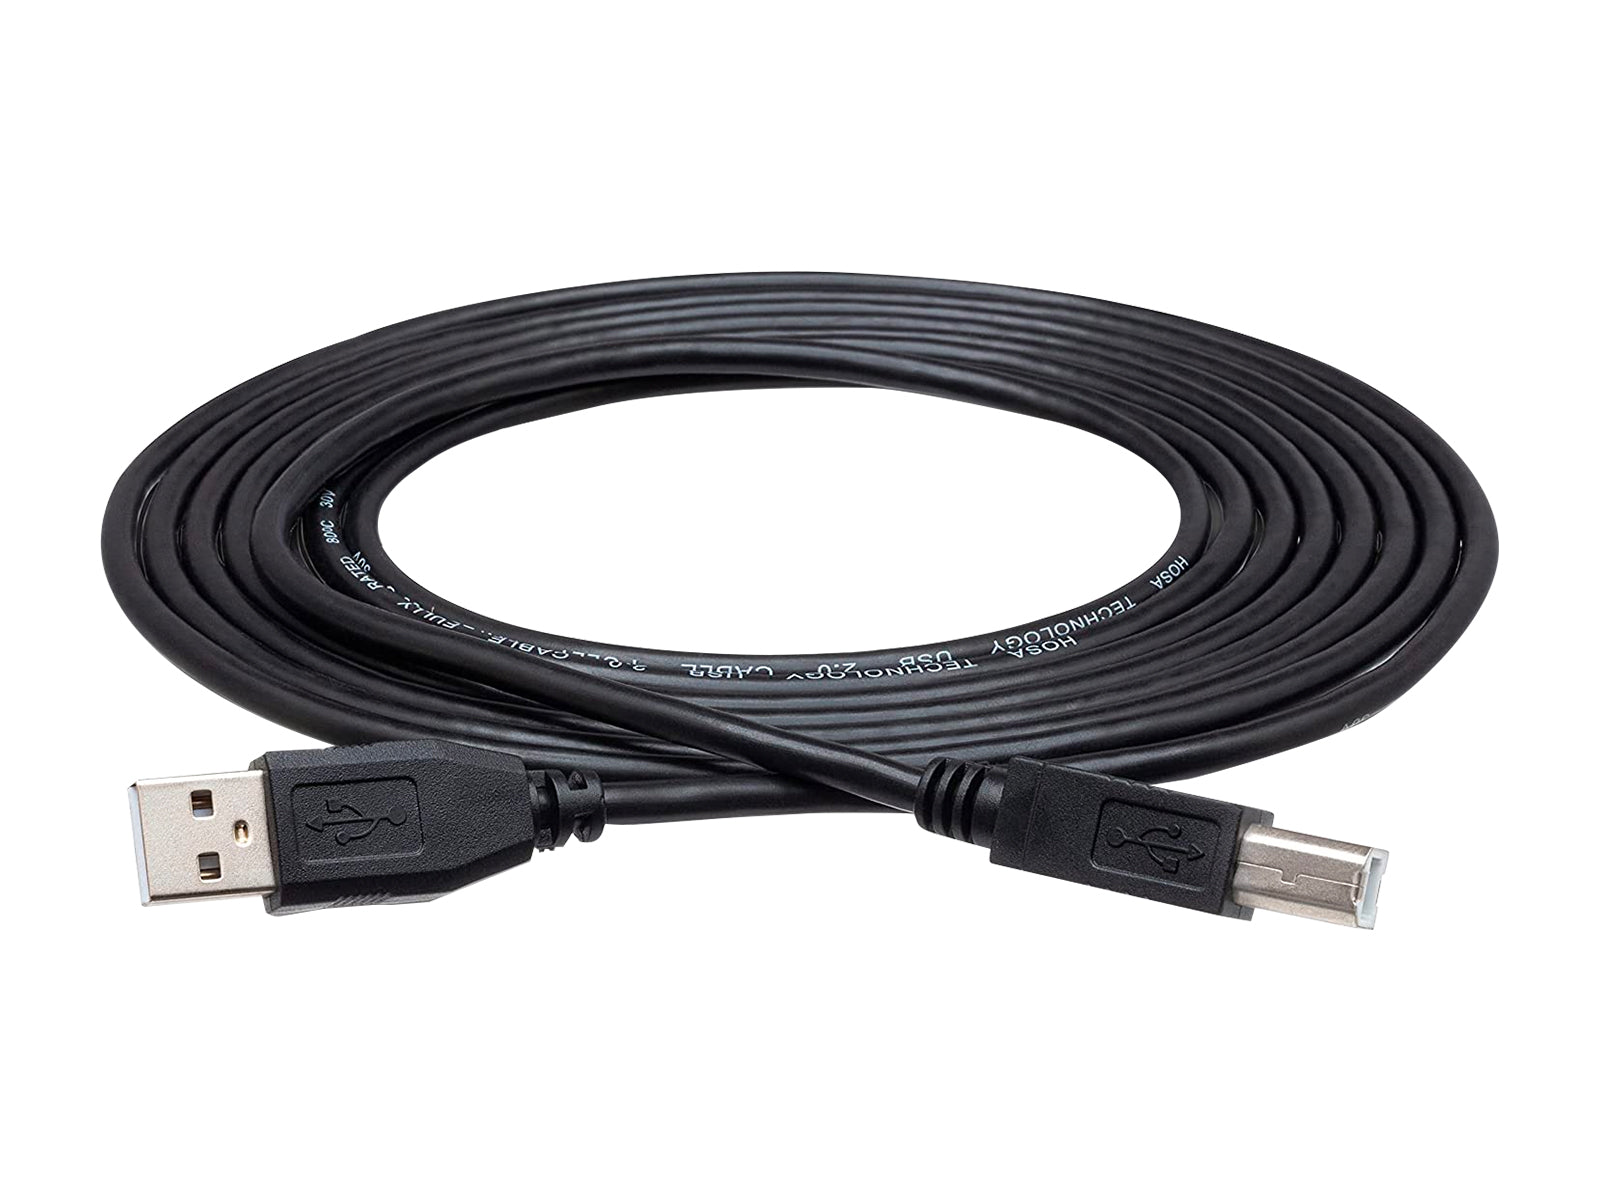 Cable de señal de vídeo USB tipo A a USB tipo B de 6 pies (39917) Monitors.com